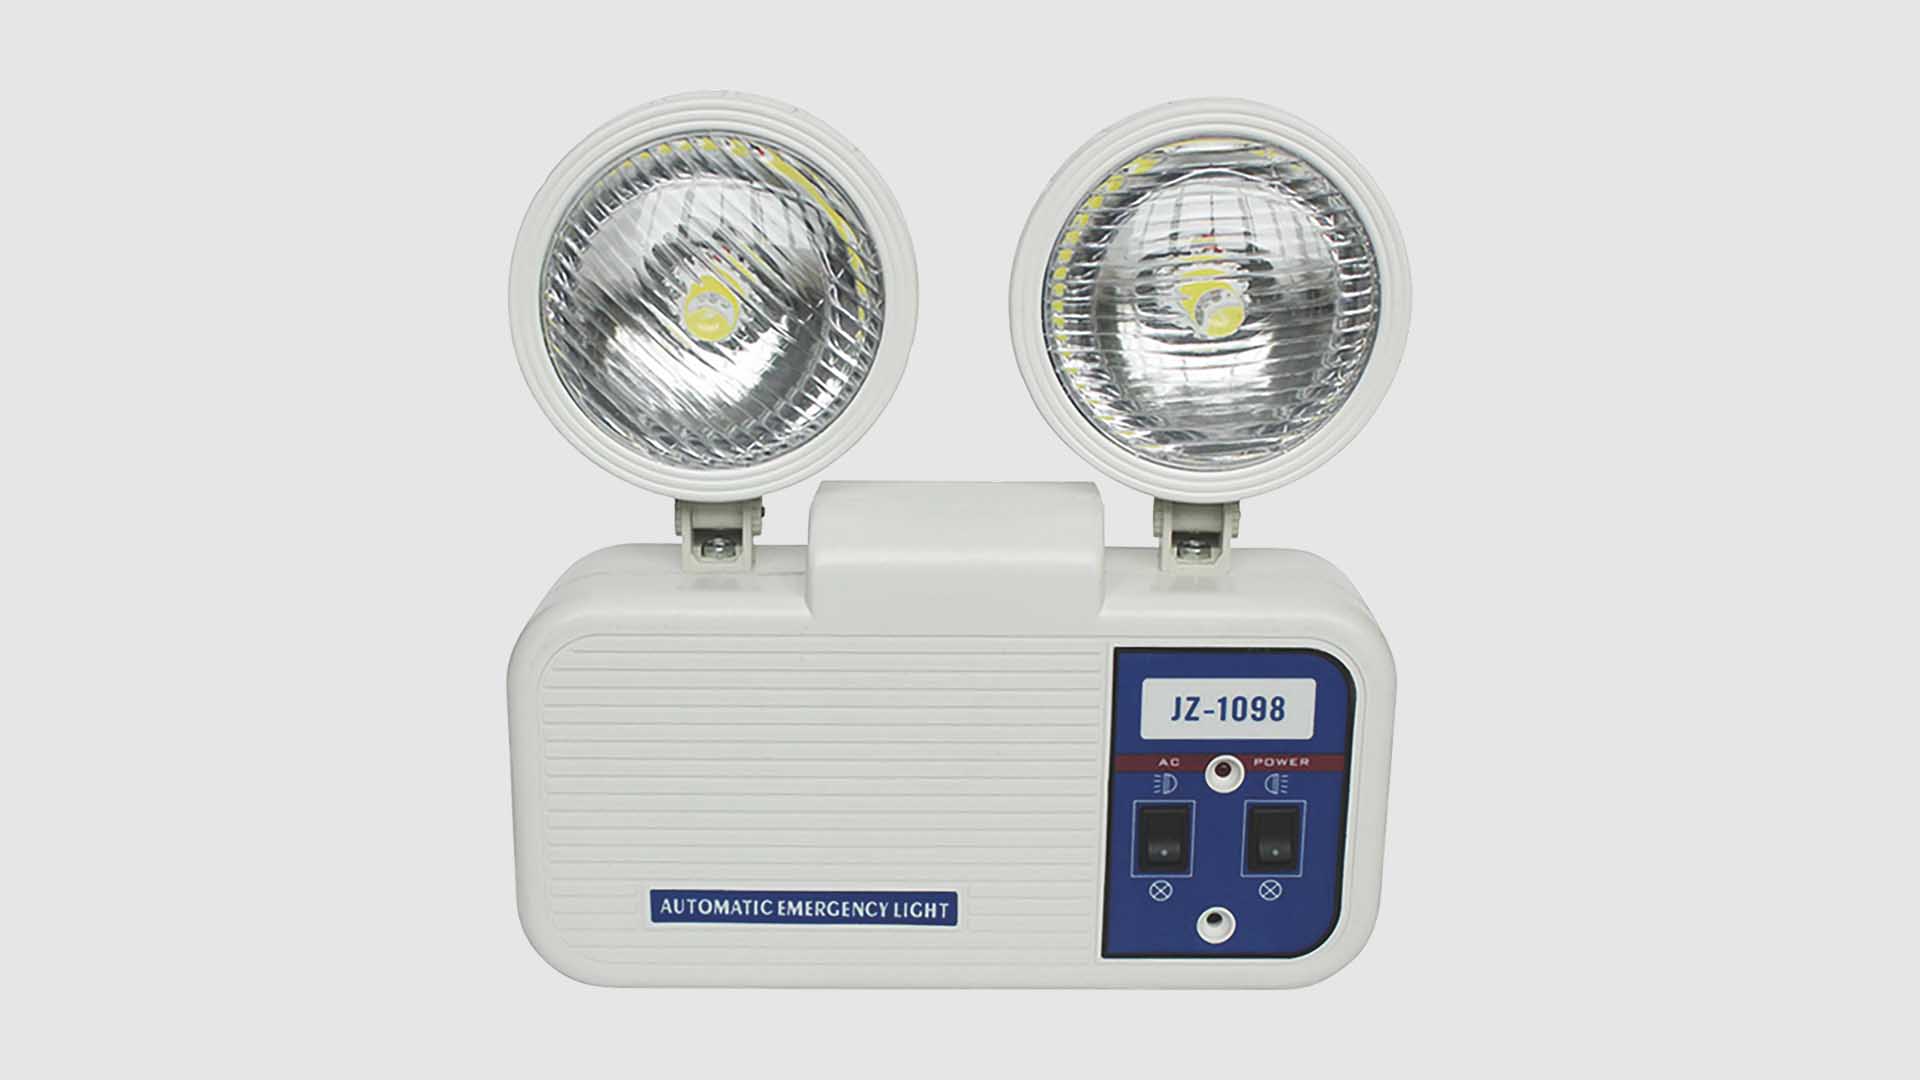 Dritë urgjence me dy koka SL-1098 me cilësi të lartë-Shitje me shumicë-Guangdong Zhenhui Fire Technology Co., Ltd.